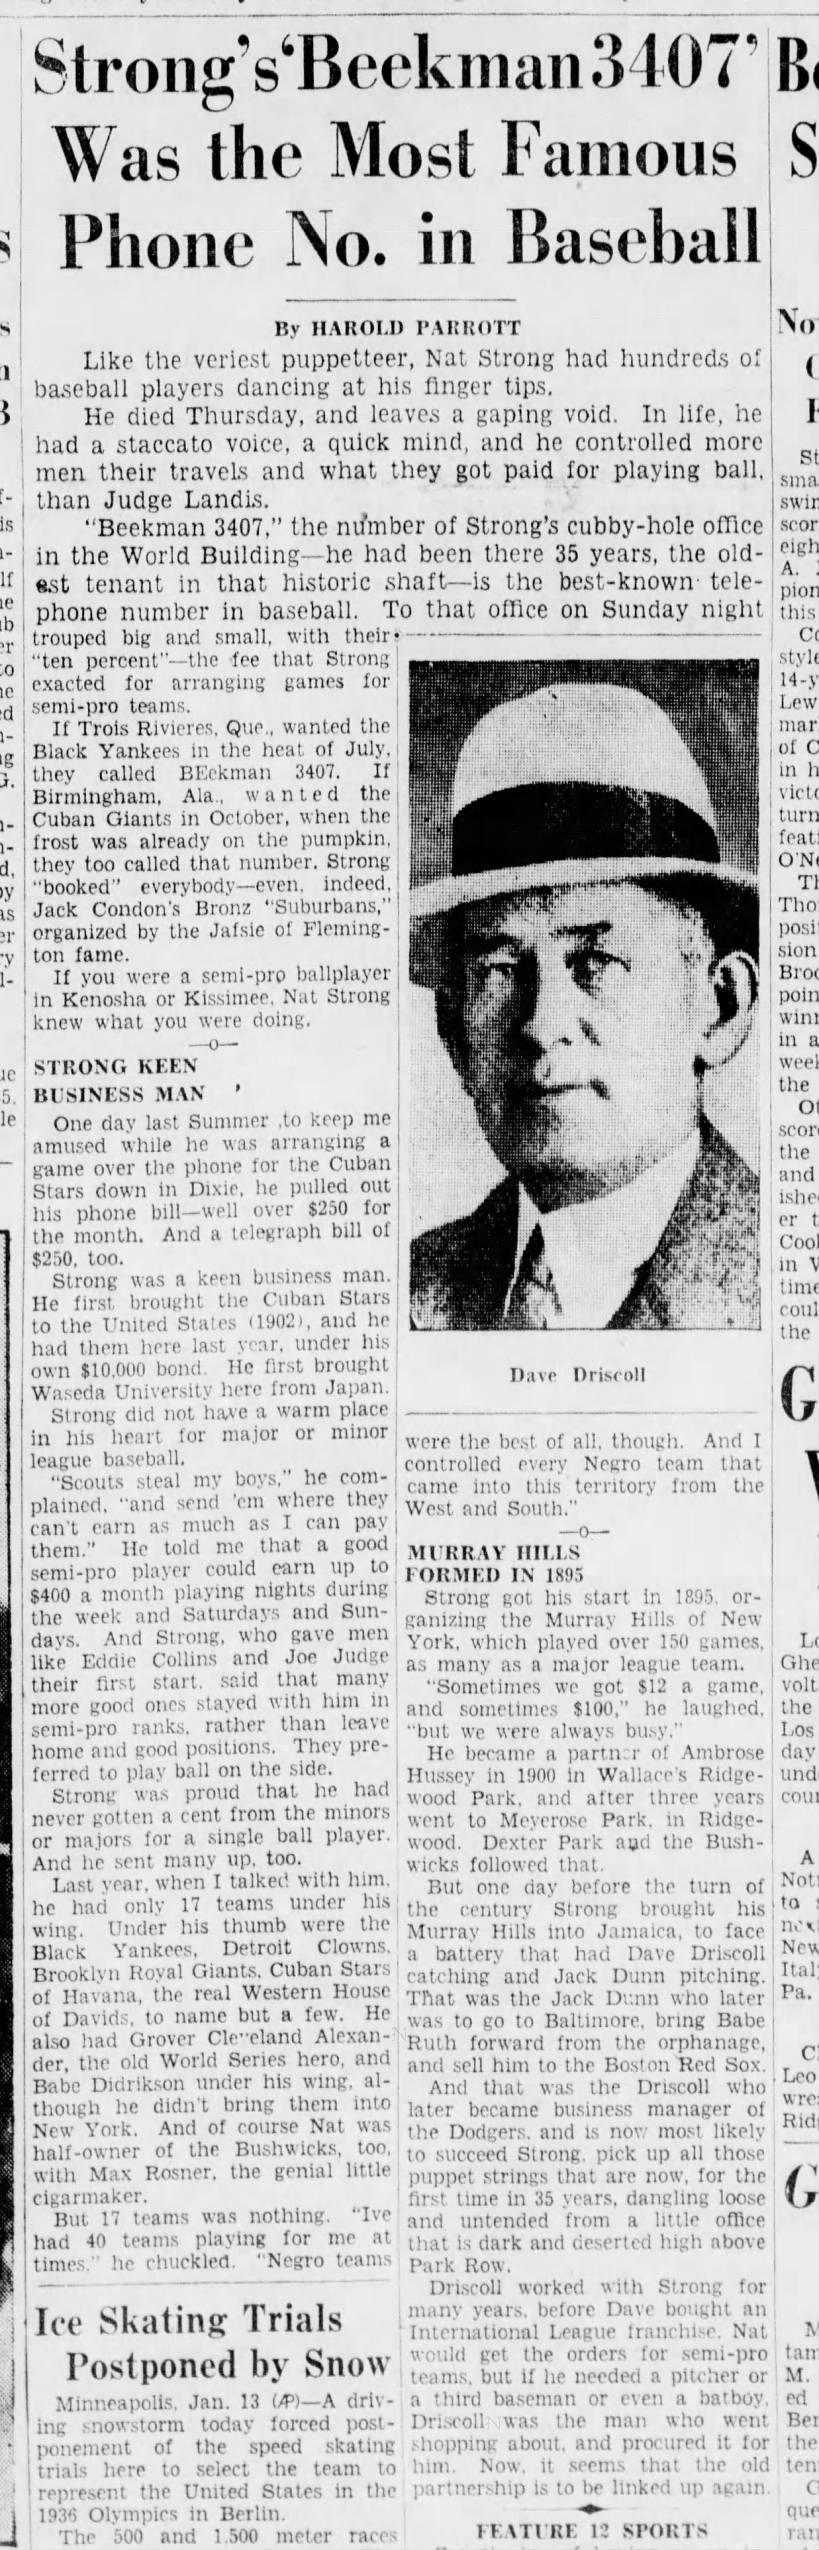 Brooklyn Daily Eagle_1935-1-13_p37